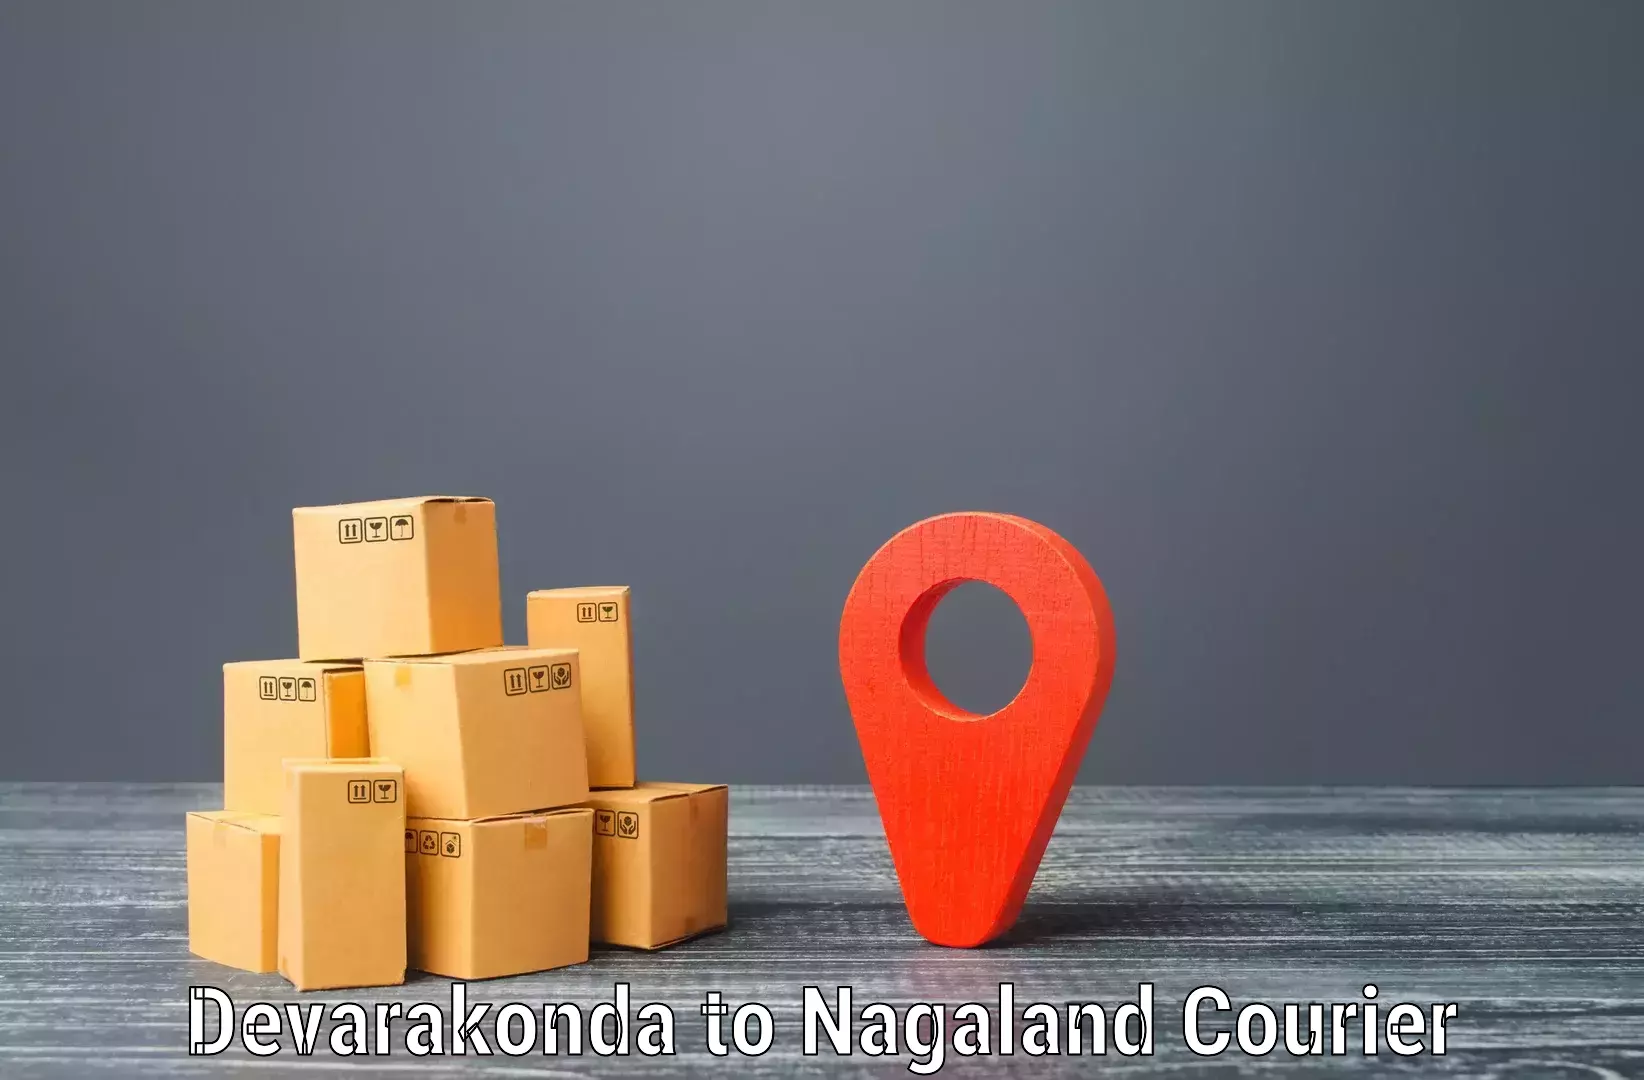 Logistics service provider Devarakonda to Mon